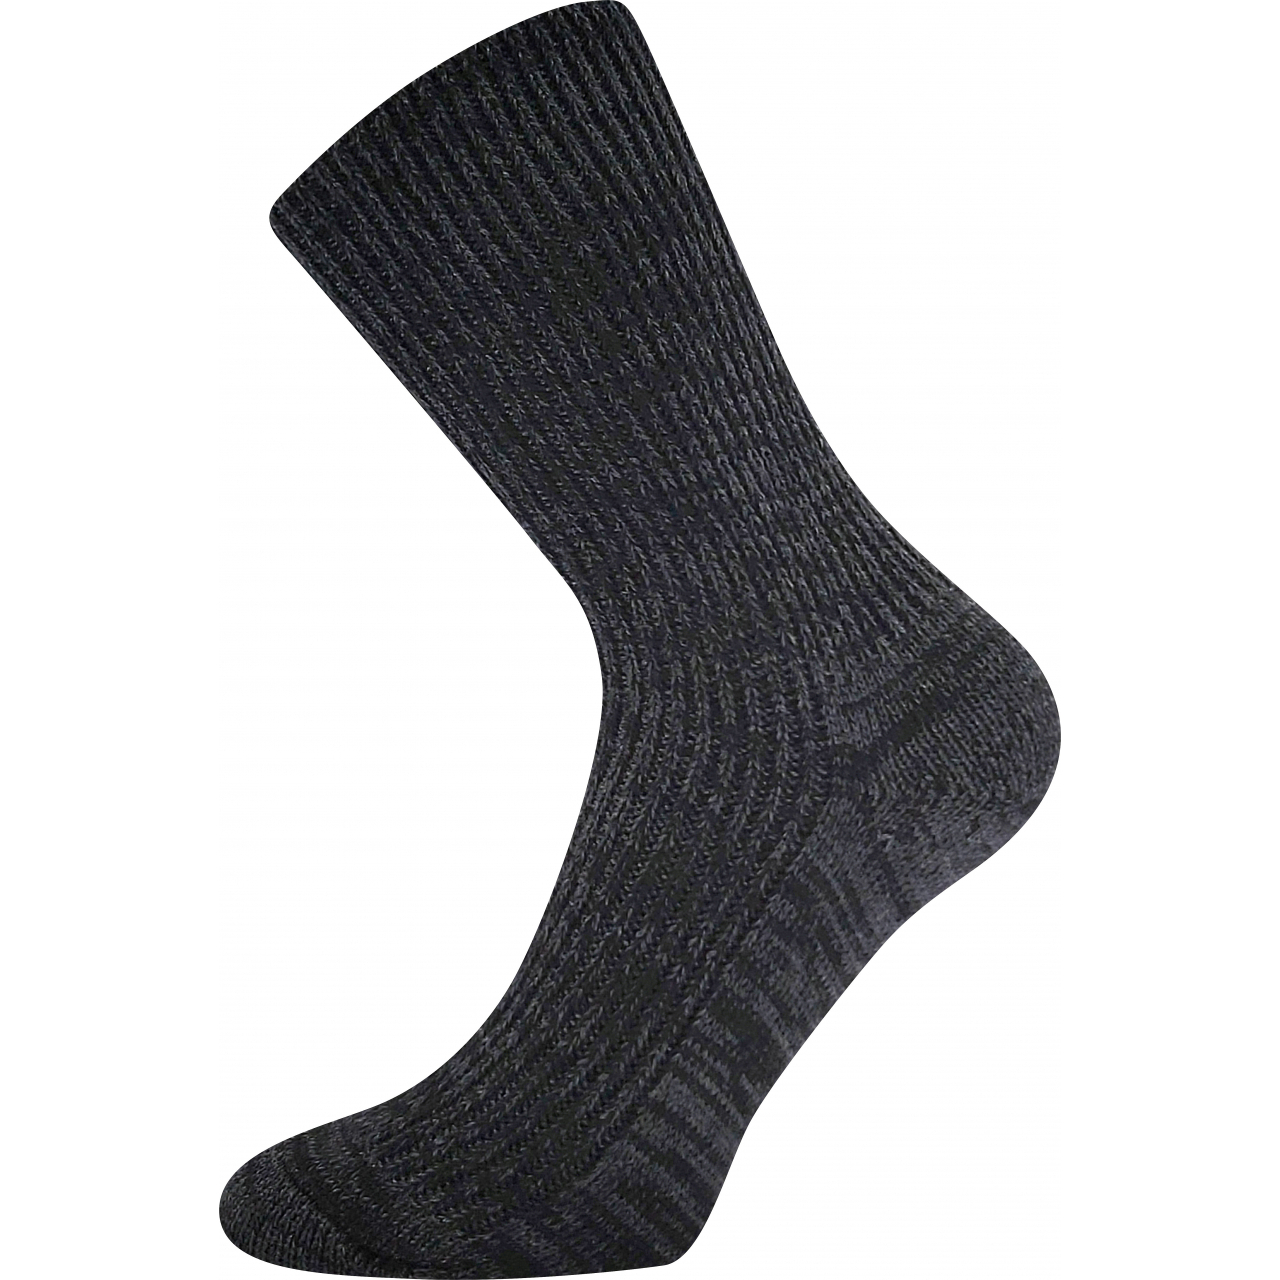 Ponožky unisex zimní Boma Říp - černé, 46-48